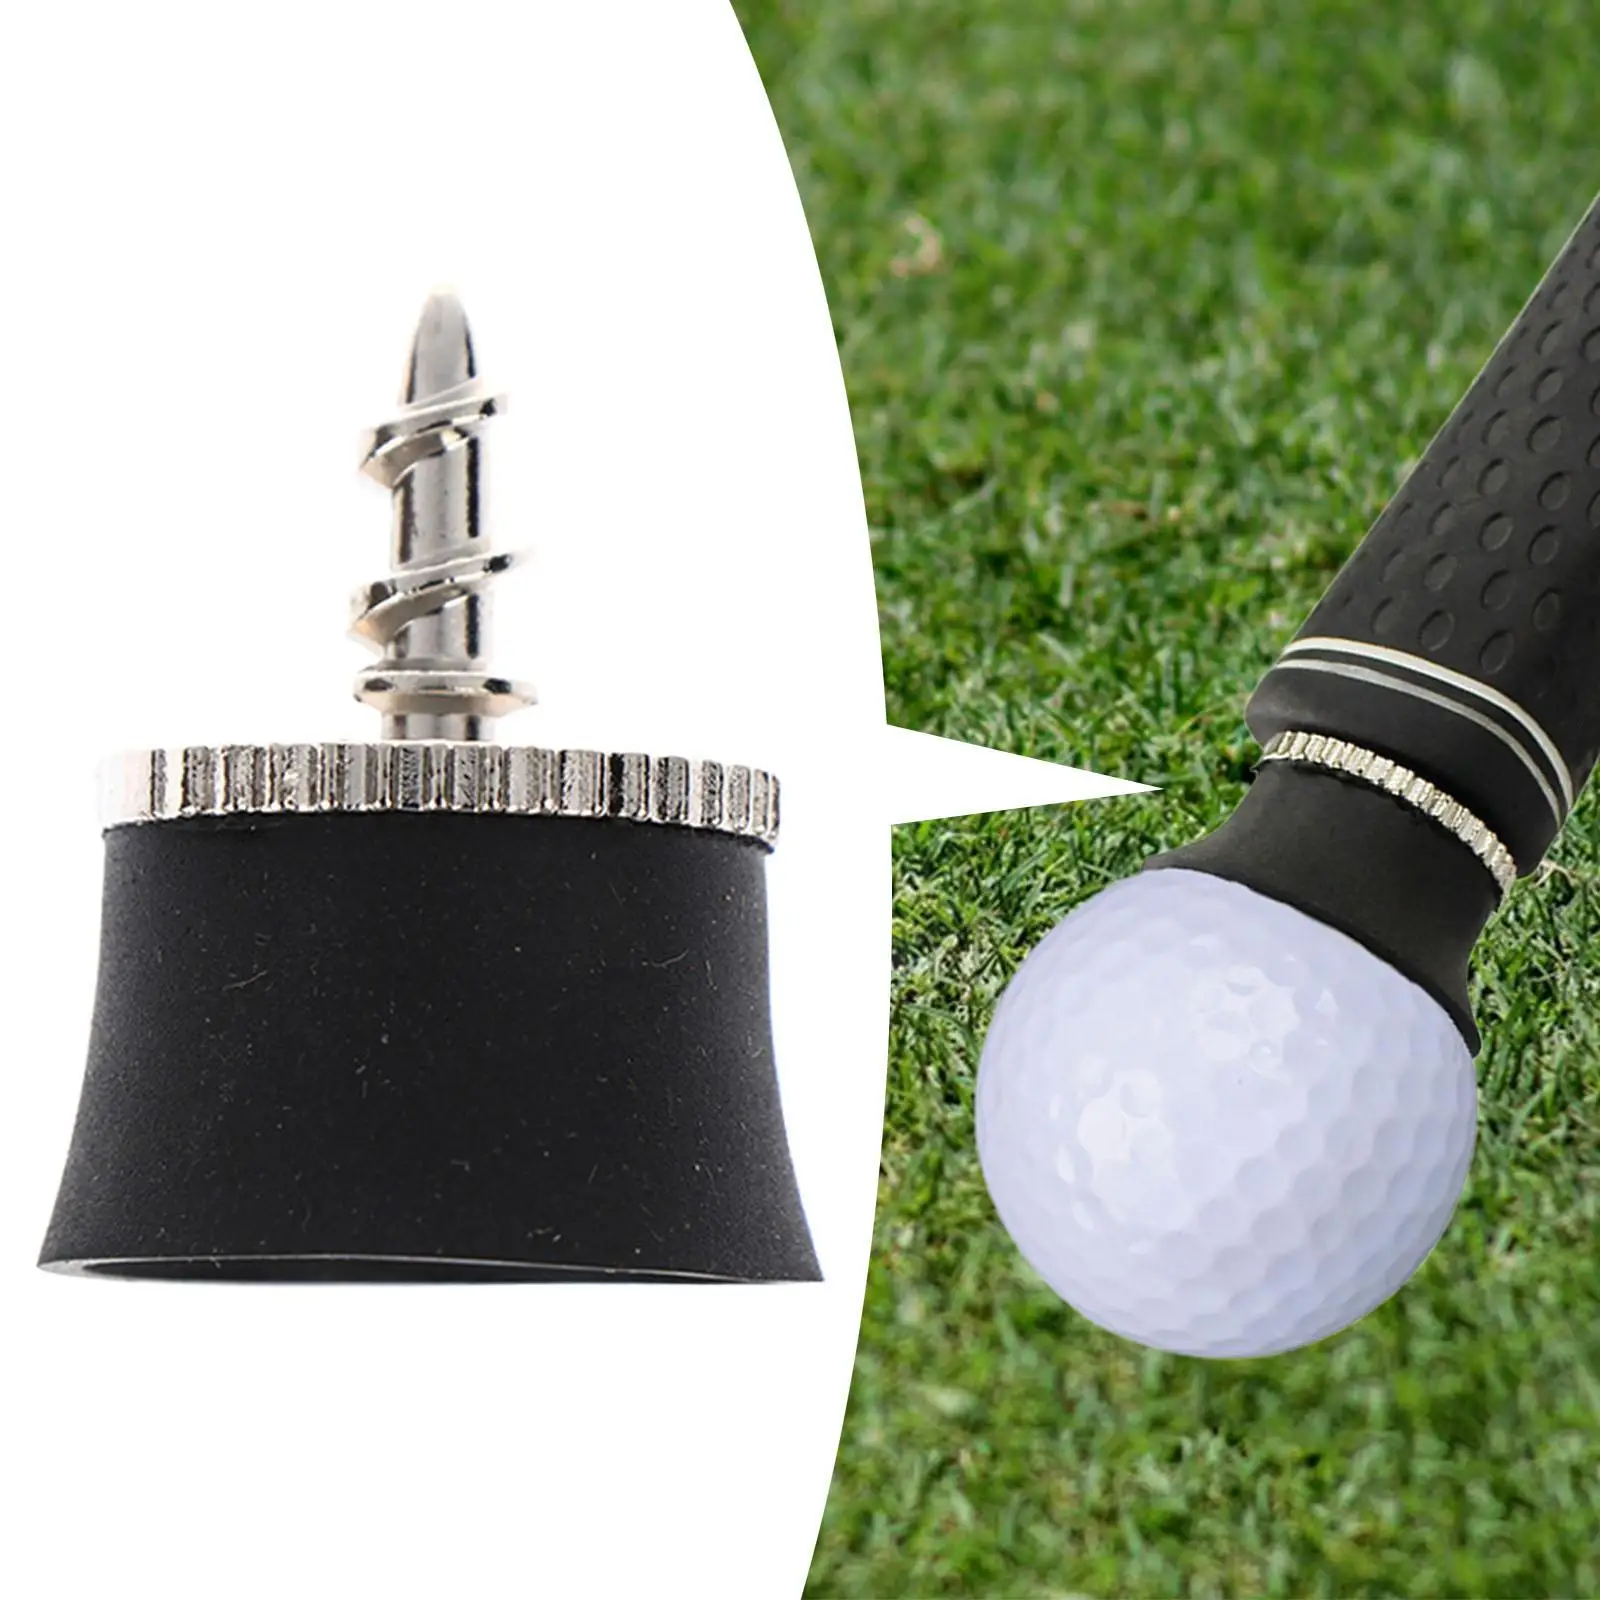 

Golf Ball Pick up Retriever Golf Sucker Accessories Training Aid Suction Cup Gadget Golf Ball Picker Upper for Putter